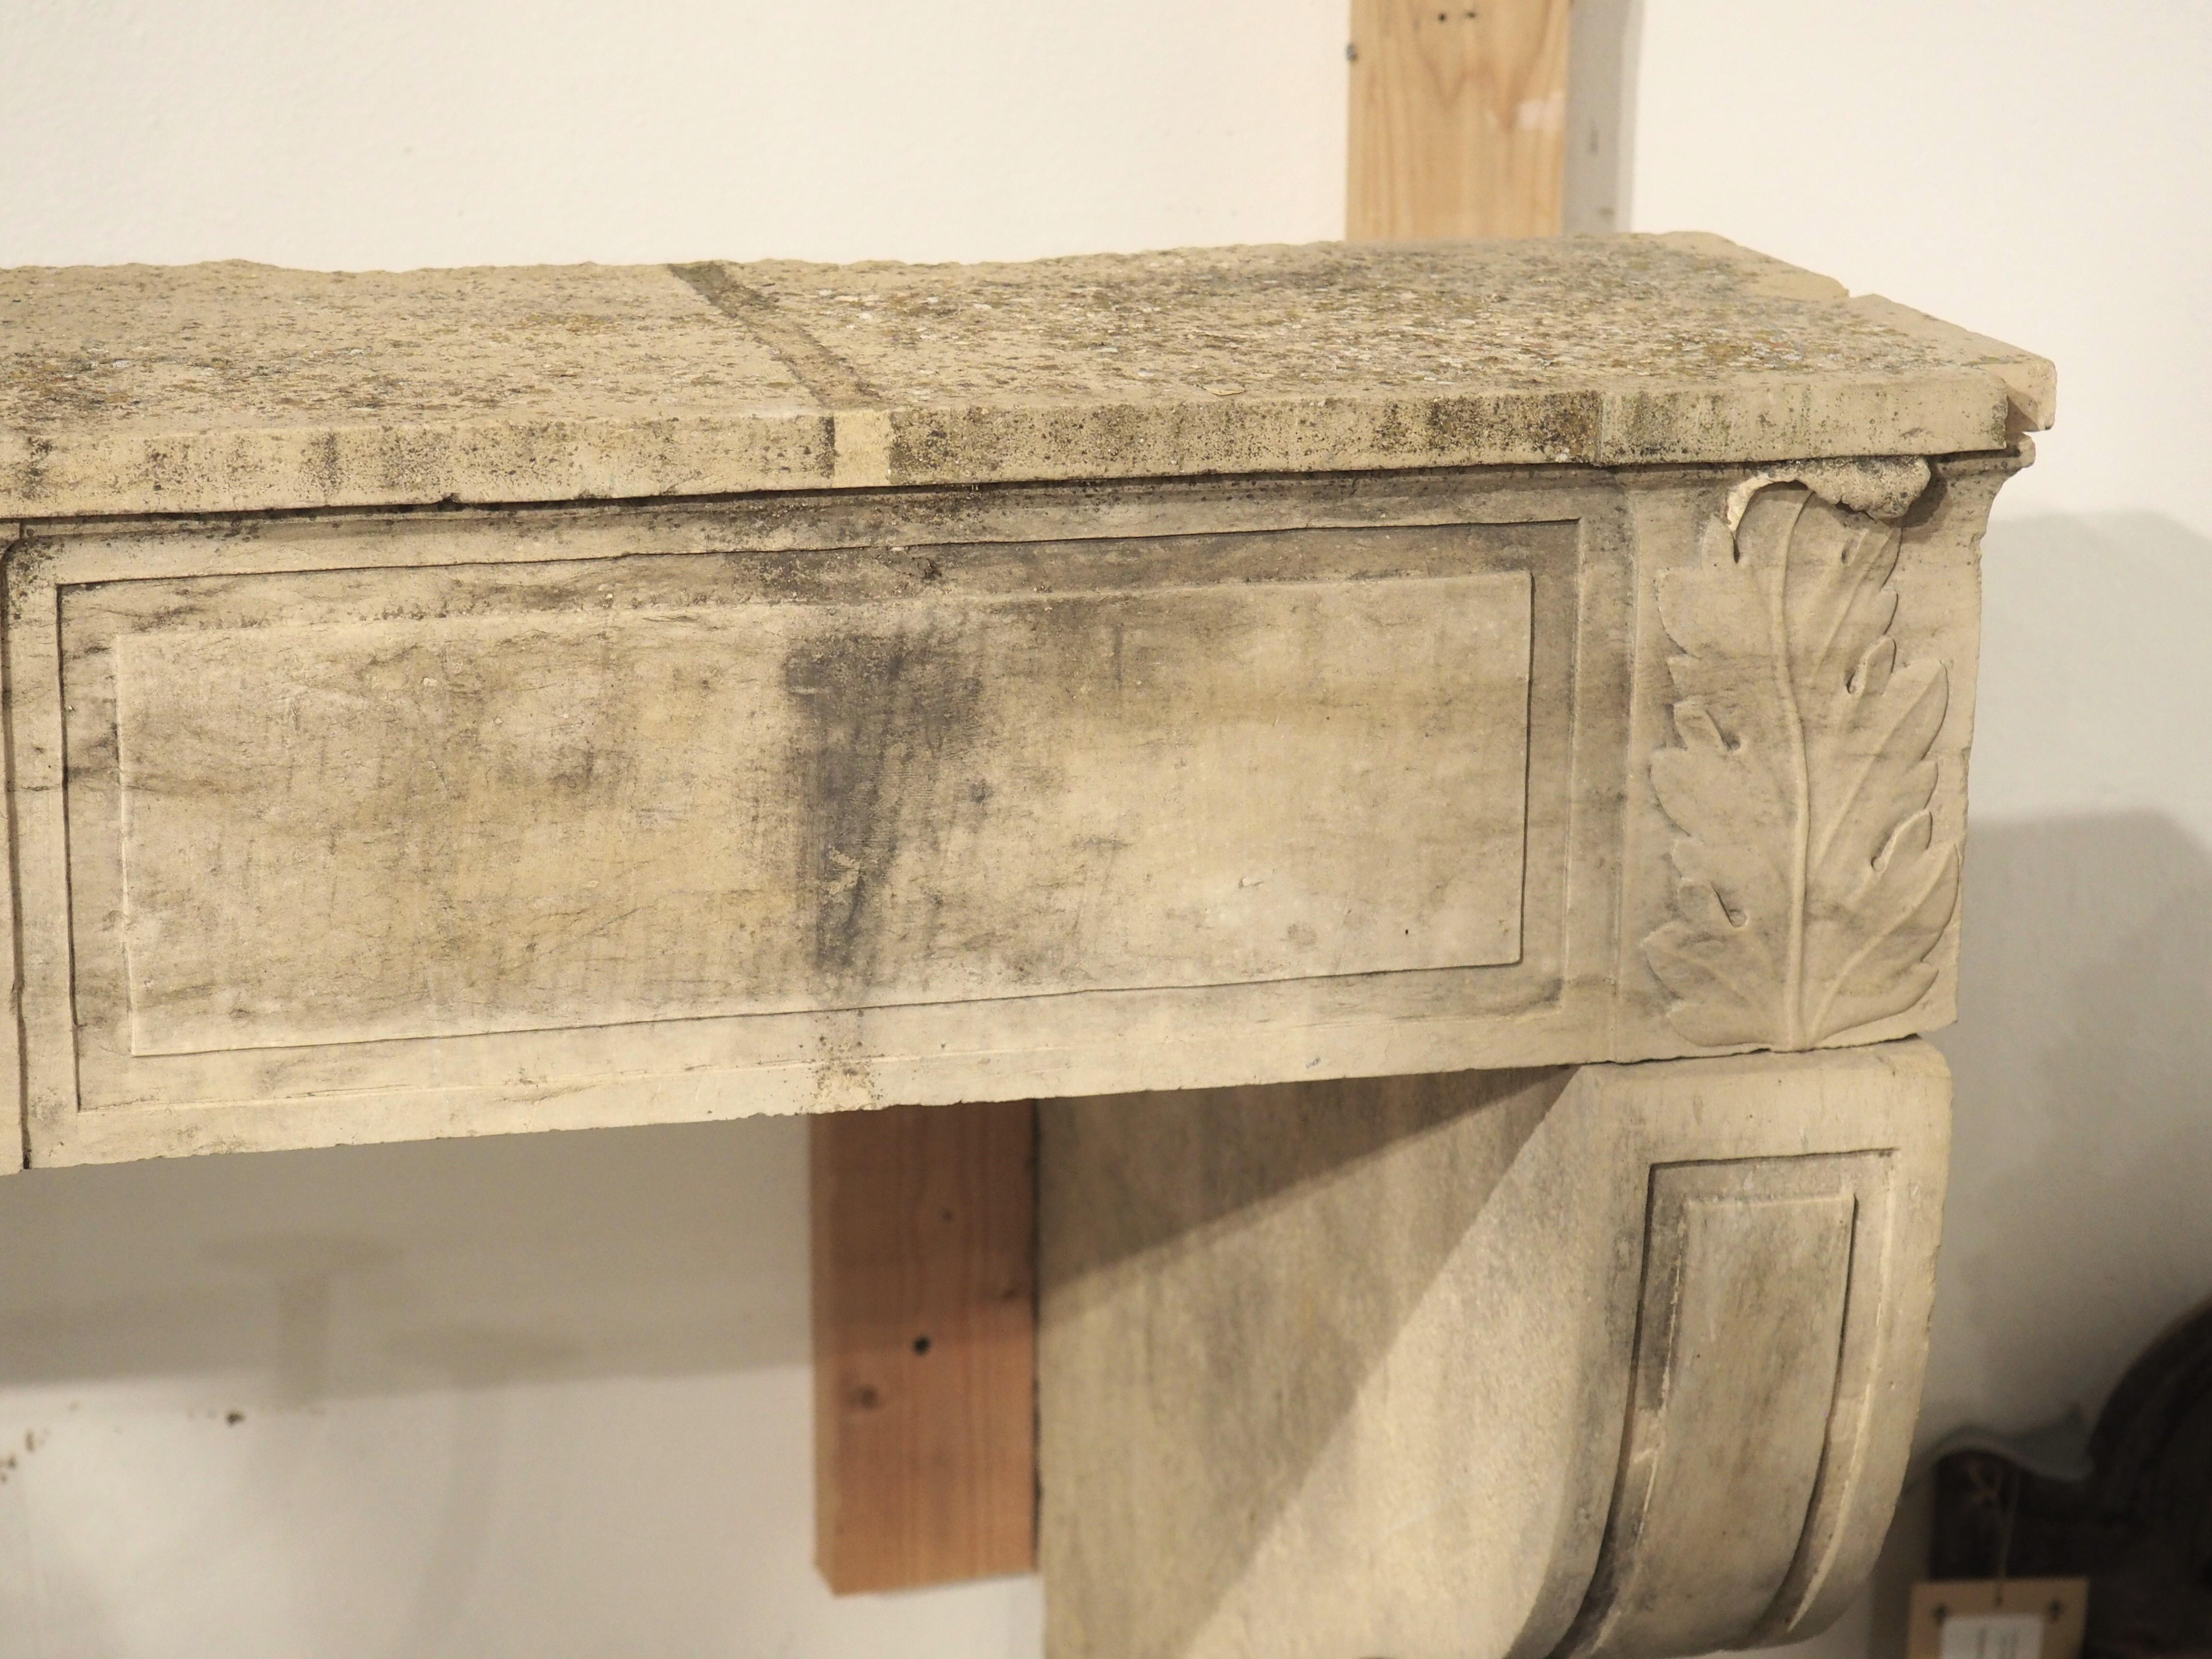 Dieser aus fünf Teilen handgeschnitzte Kaminsims aus Kalkstein stammt aus der Gemeinde Beaune im Osten Frankreichs. Die Schnitzereien stammen aus der Zeit um 1785 und sind eindeutig aus der Zeit Ludwigs XVI., vor allem das Medaillon in der Mitte und